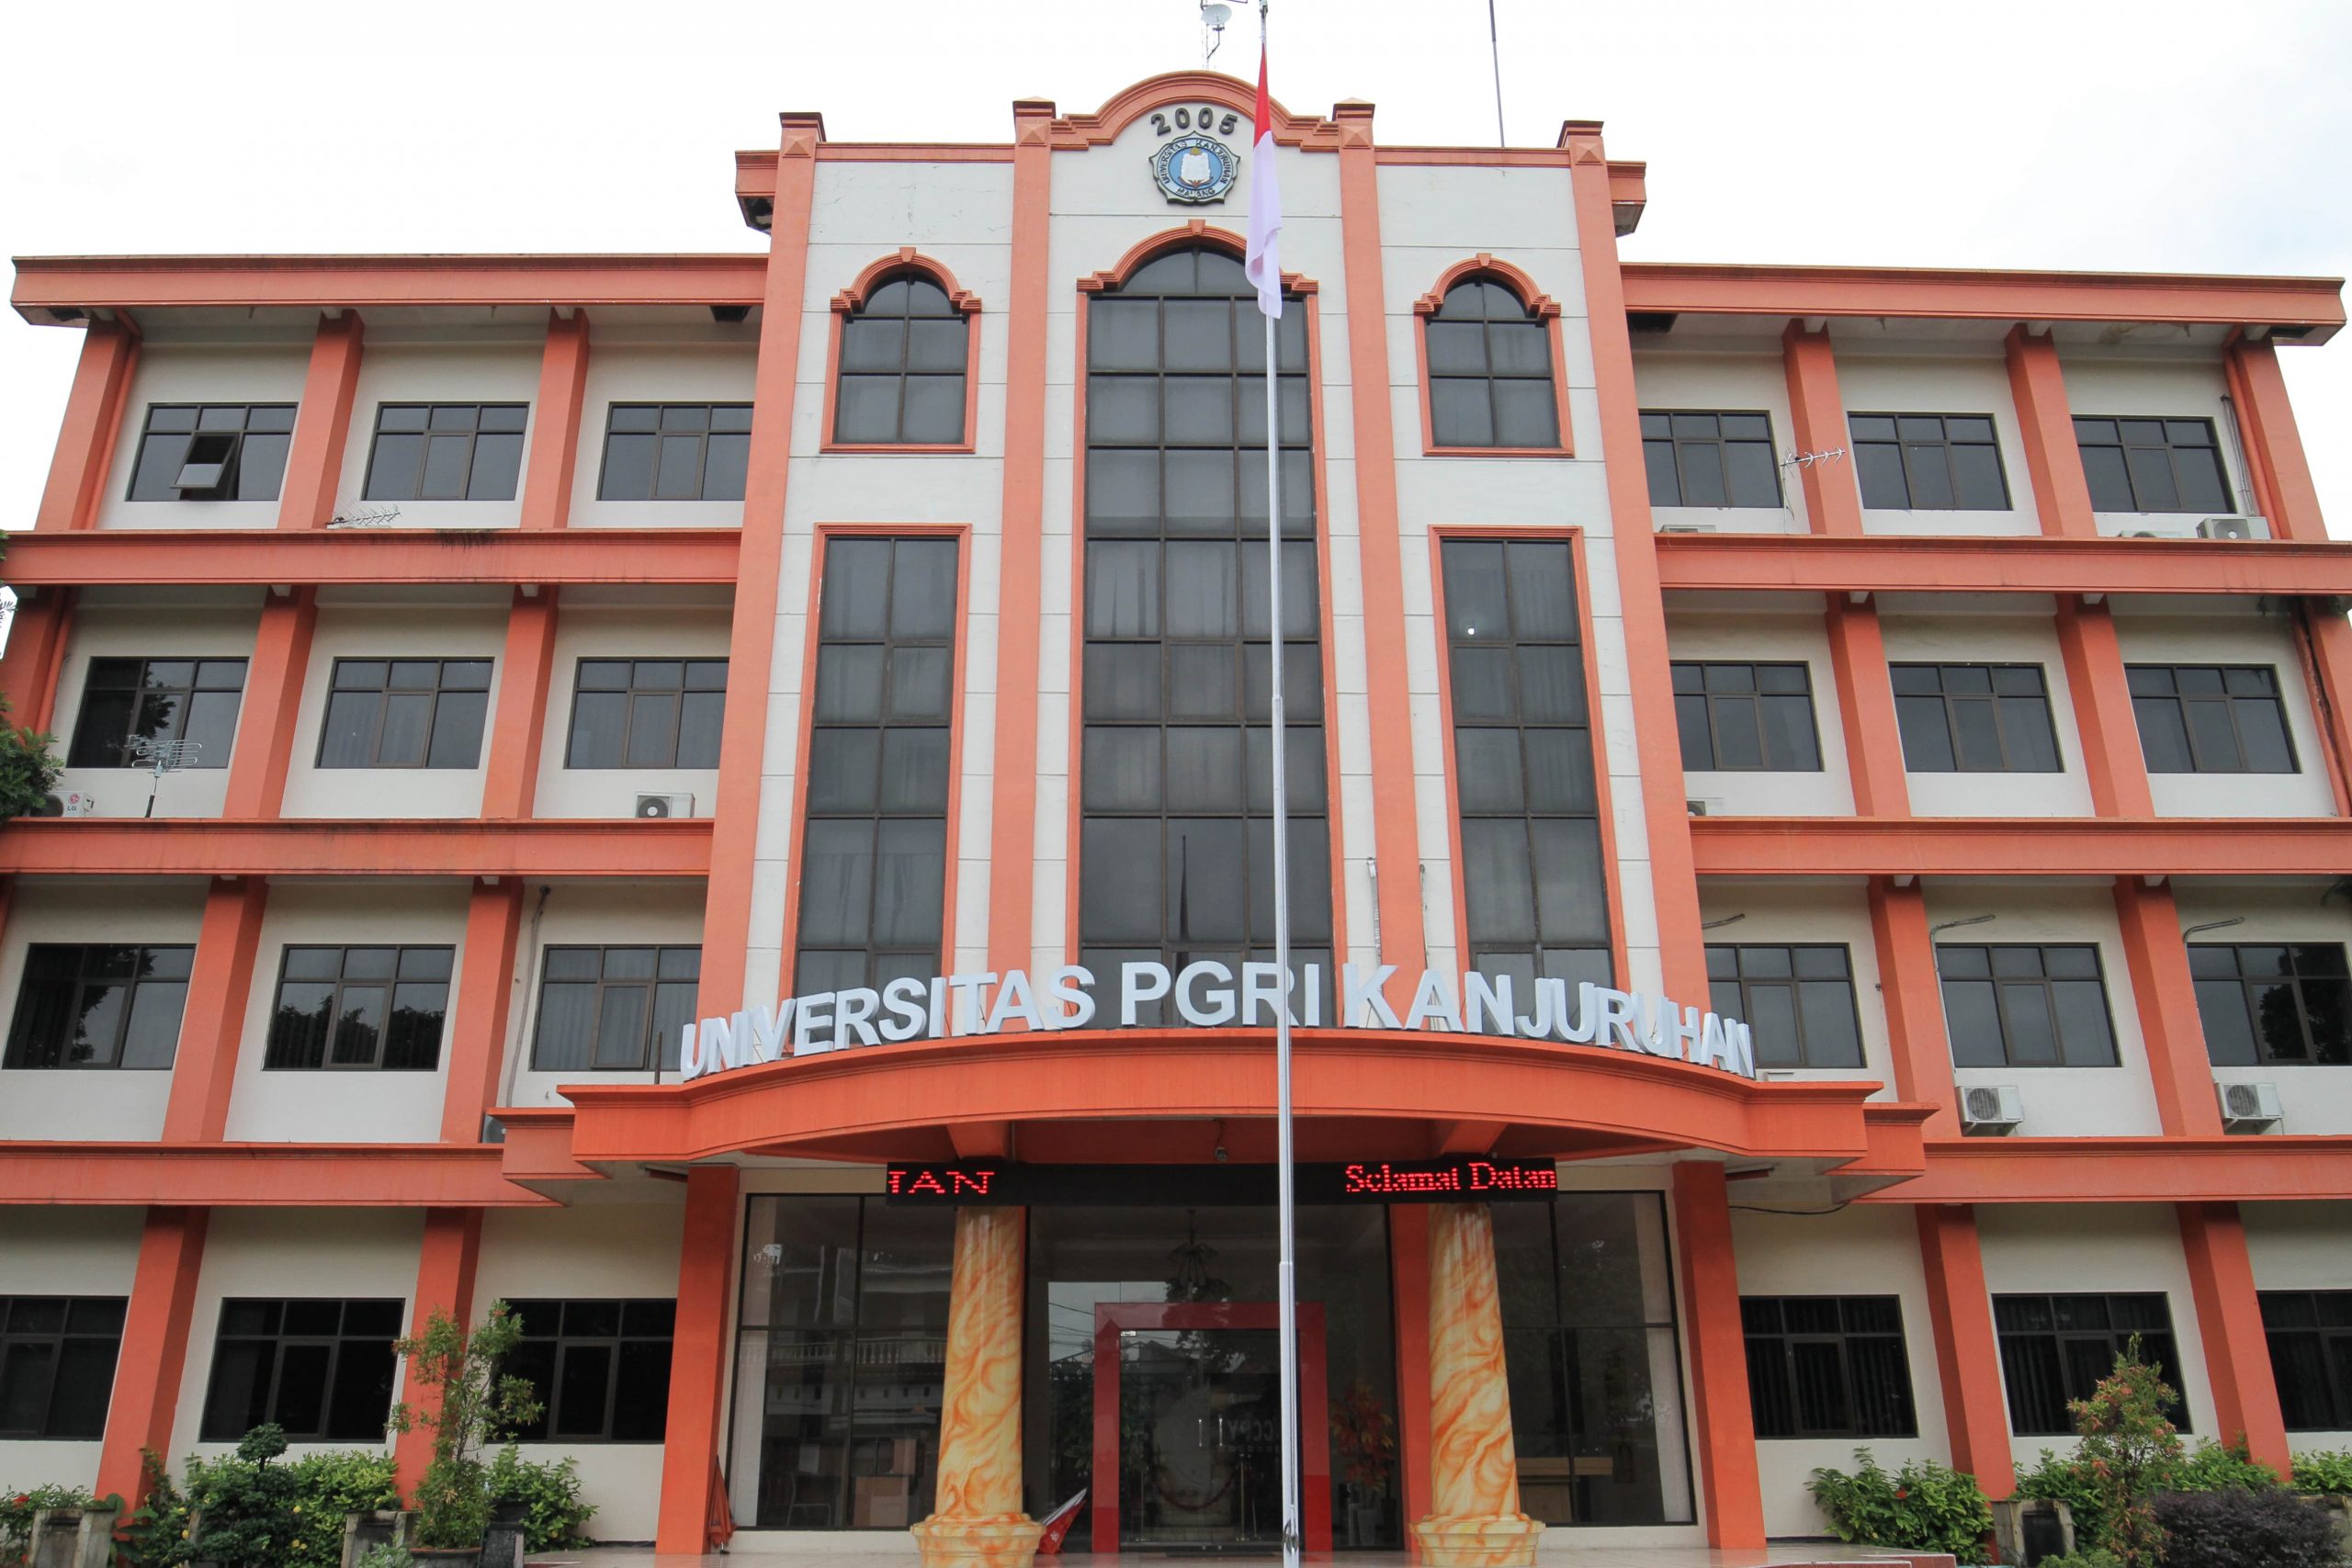 Universitas PGRI Kanjuruhan